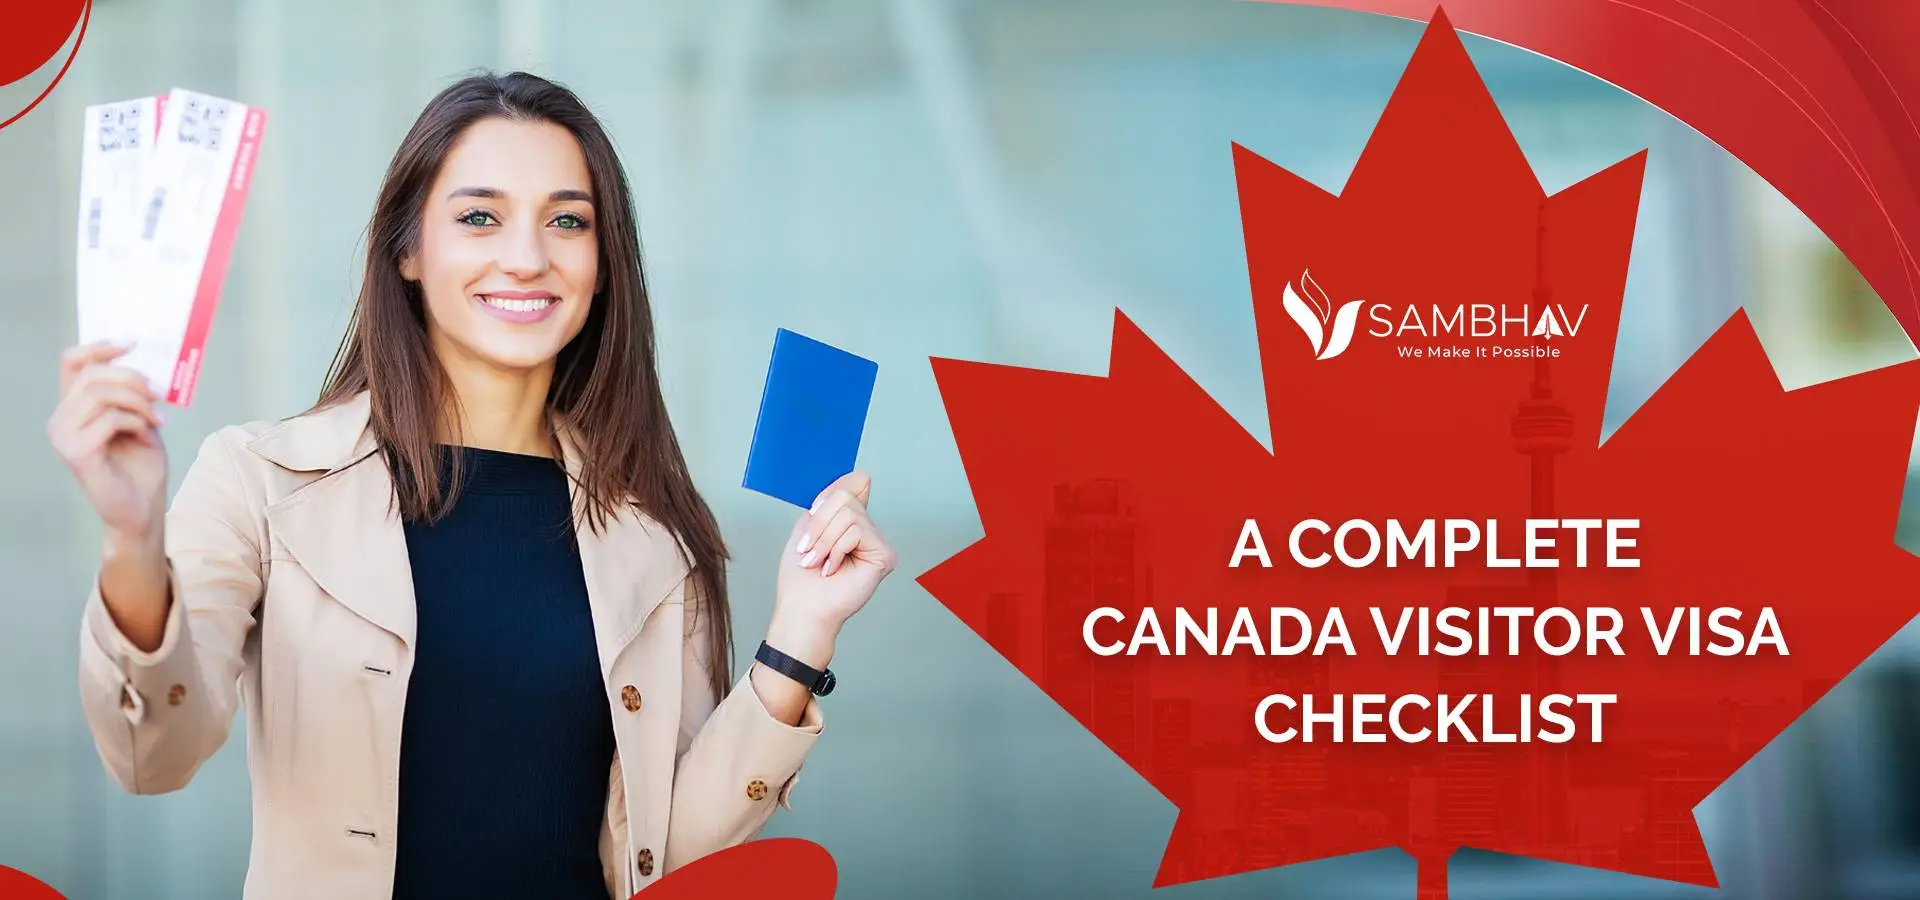 A Complete Canada Visitor Visa Checklist